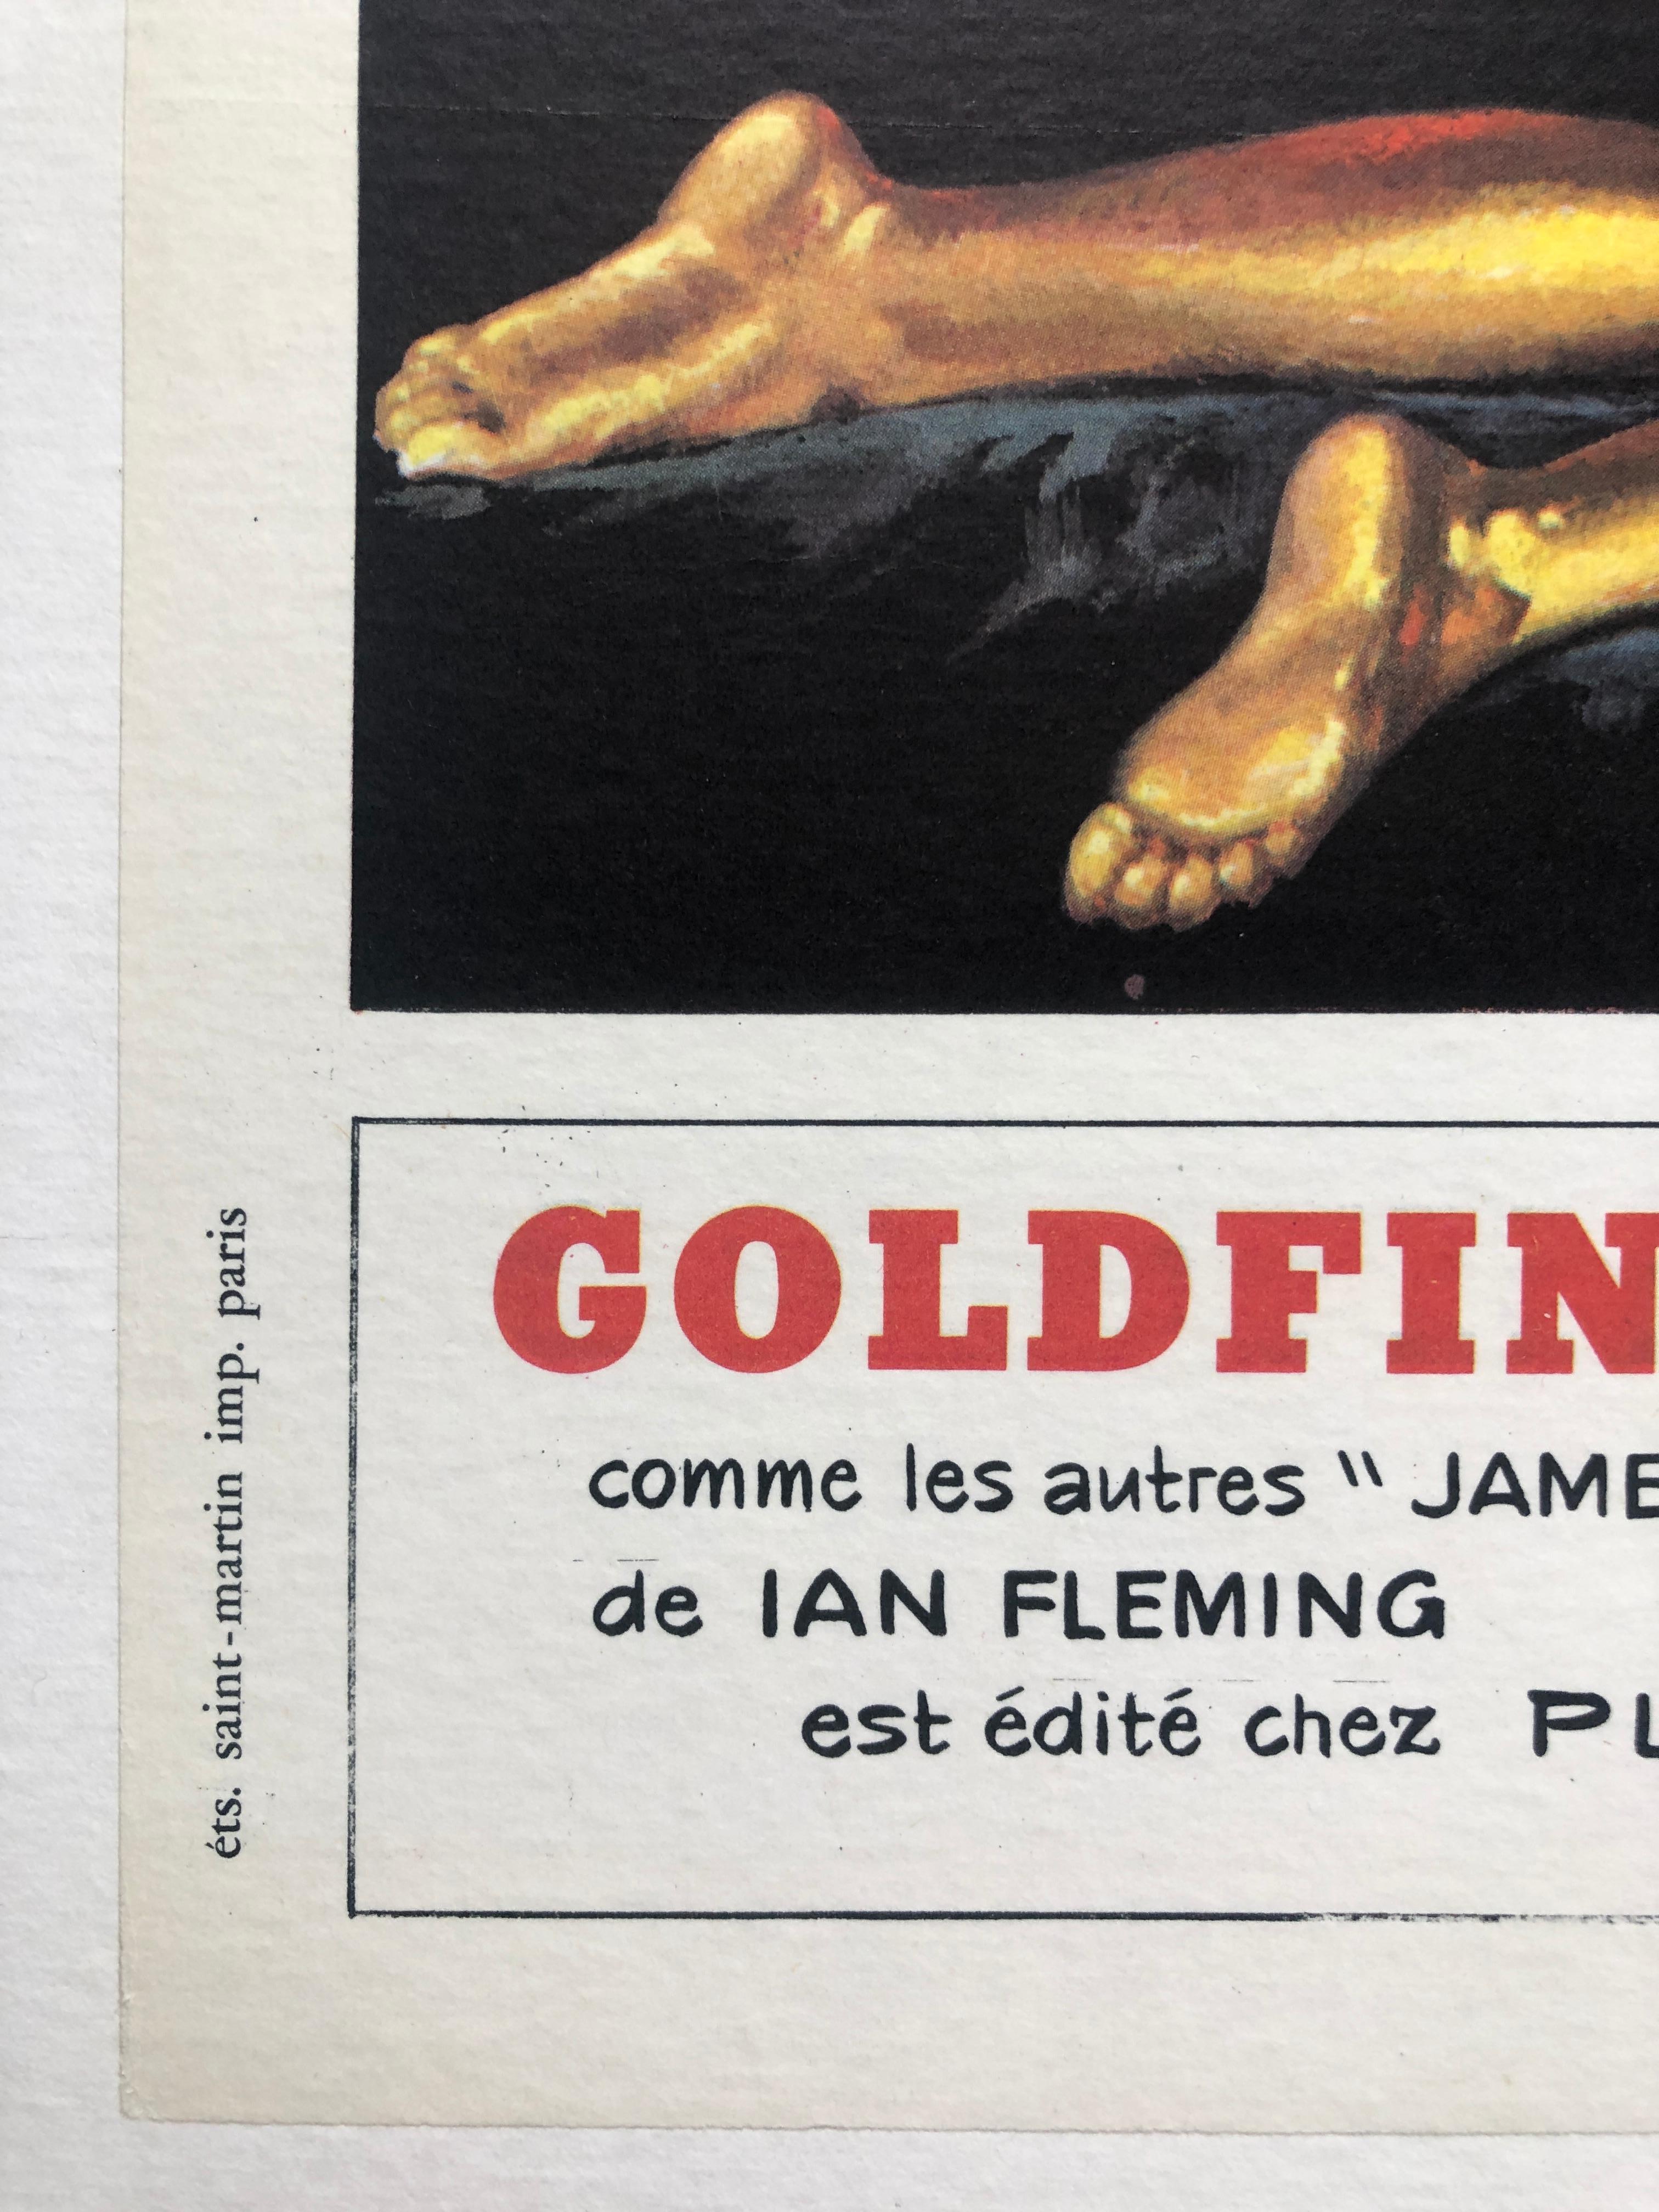 Paper James Bond 'Goldfinger' Original Vintage French Movie Poster, 1965